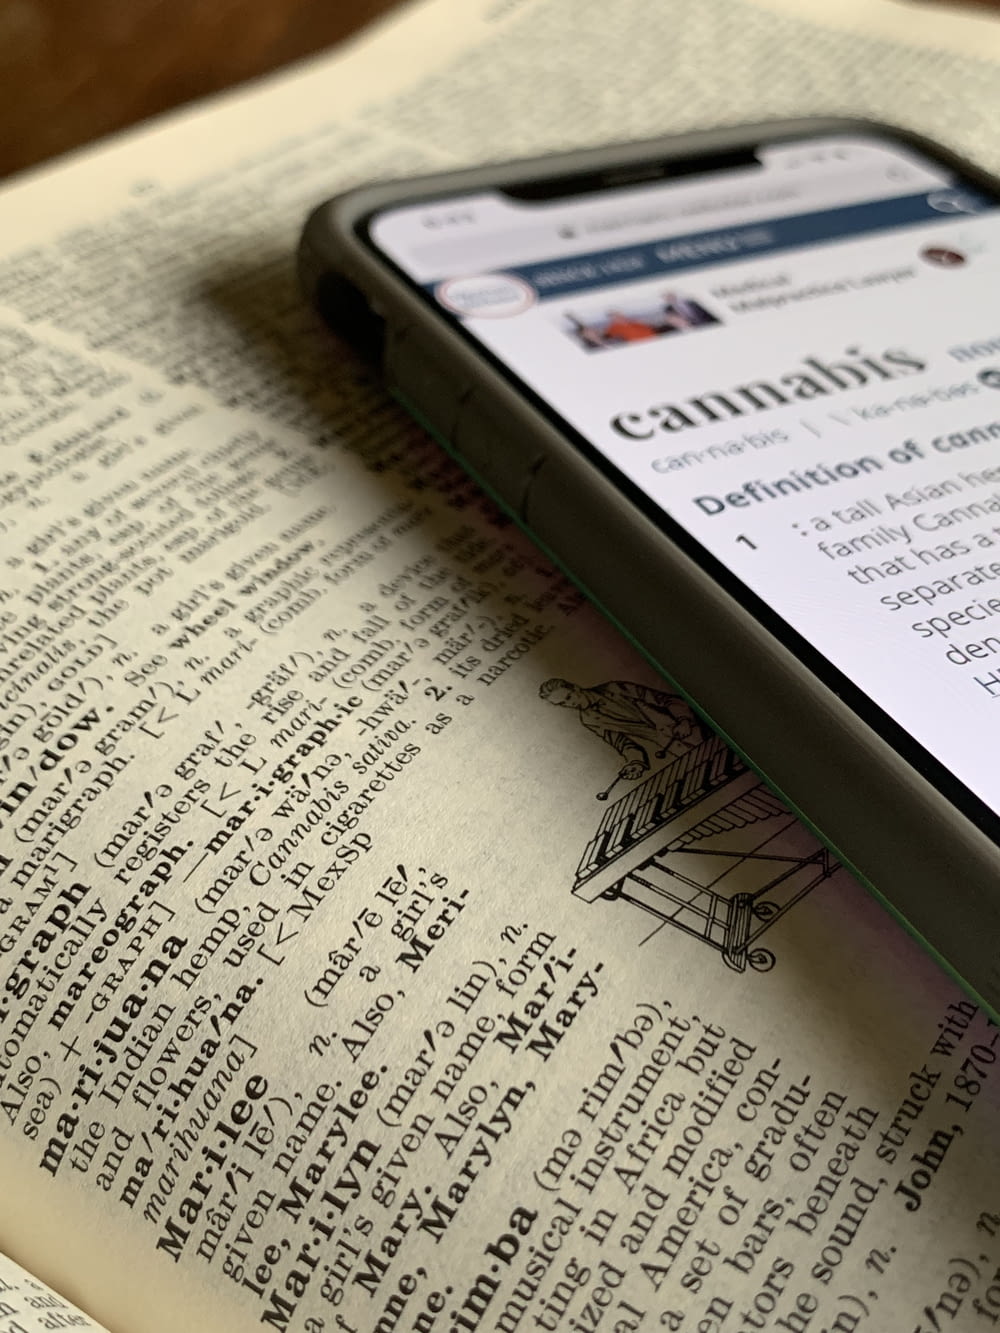 iPhone X argenté affichant la définition du cannabis en haut du dictionnaire